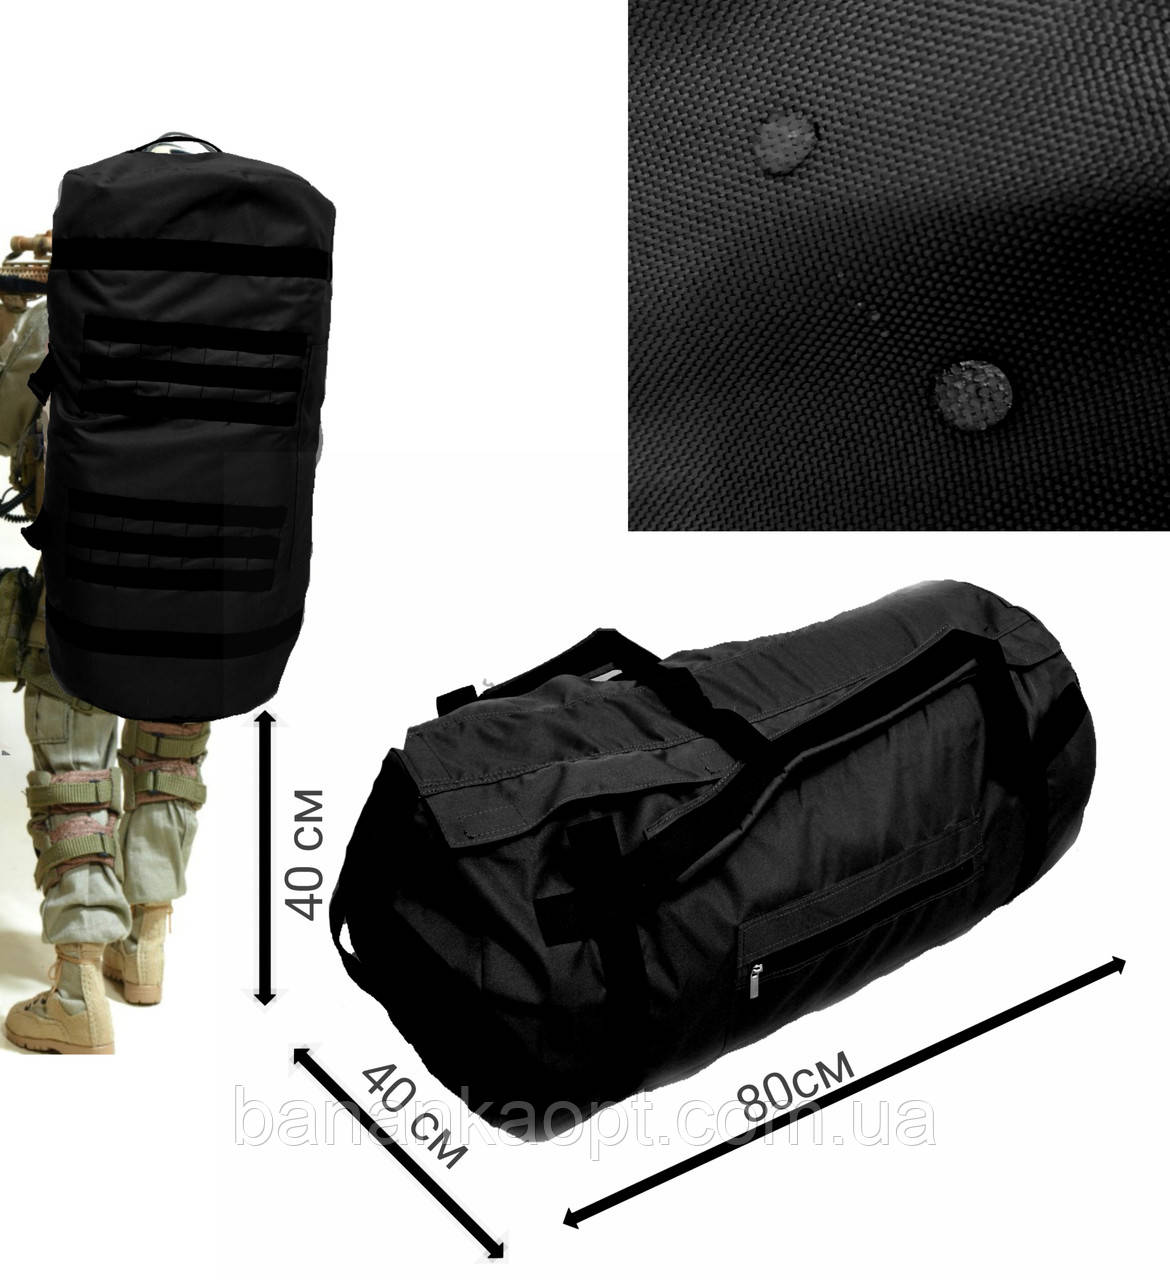 Баул 120 літрів великий армійський для туризму сумка-рюкзак тактичний чорний круглий водонепромокальний